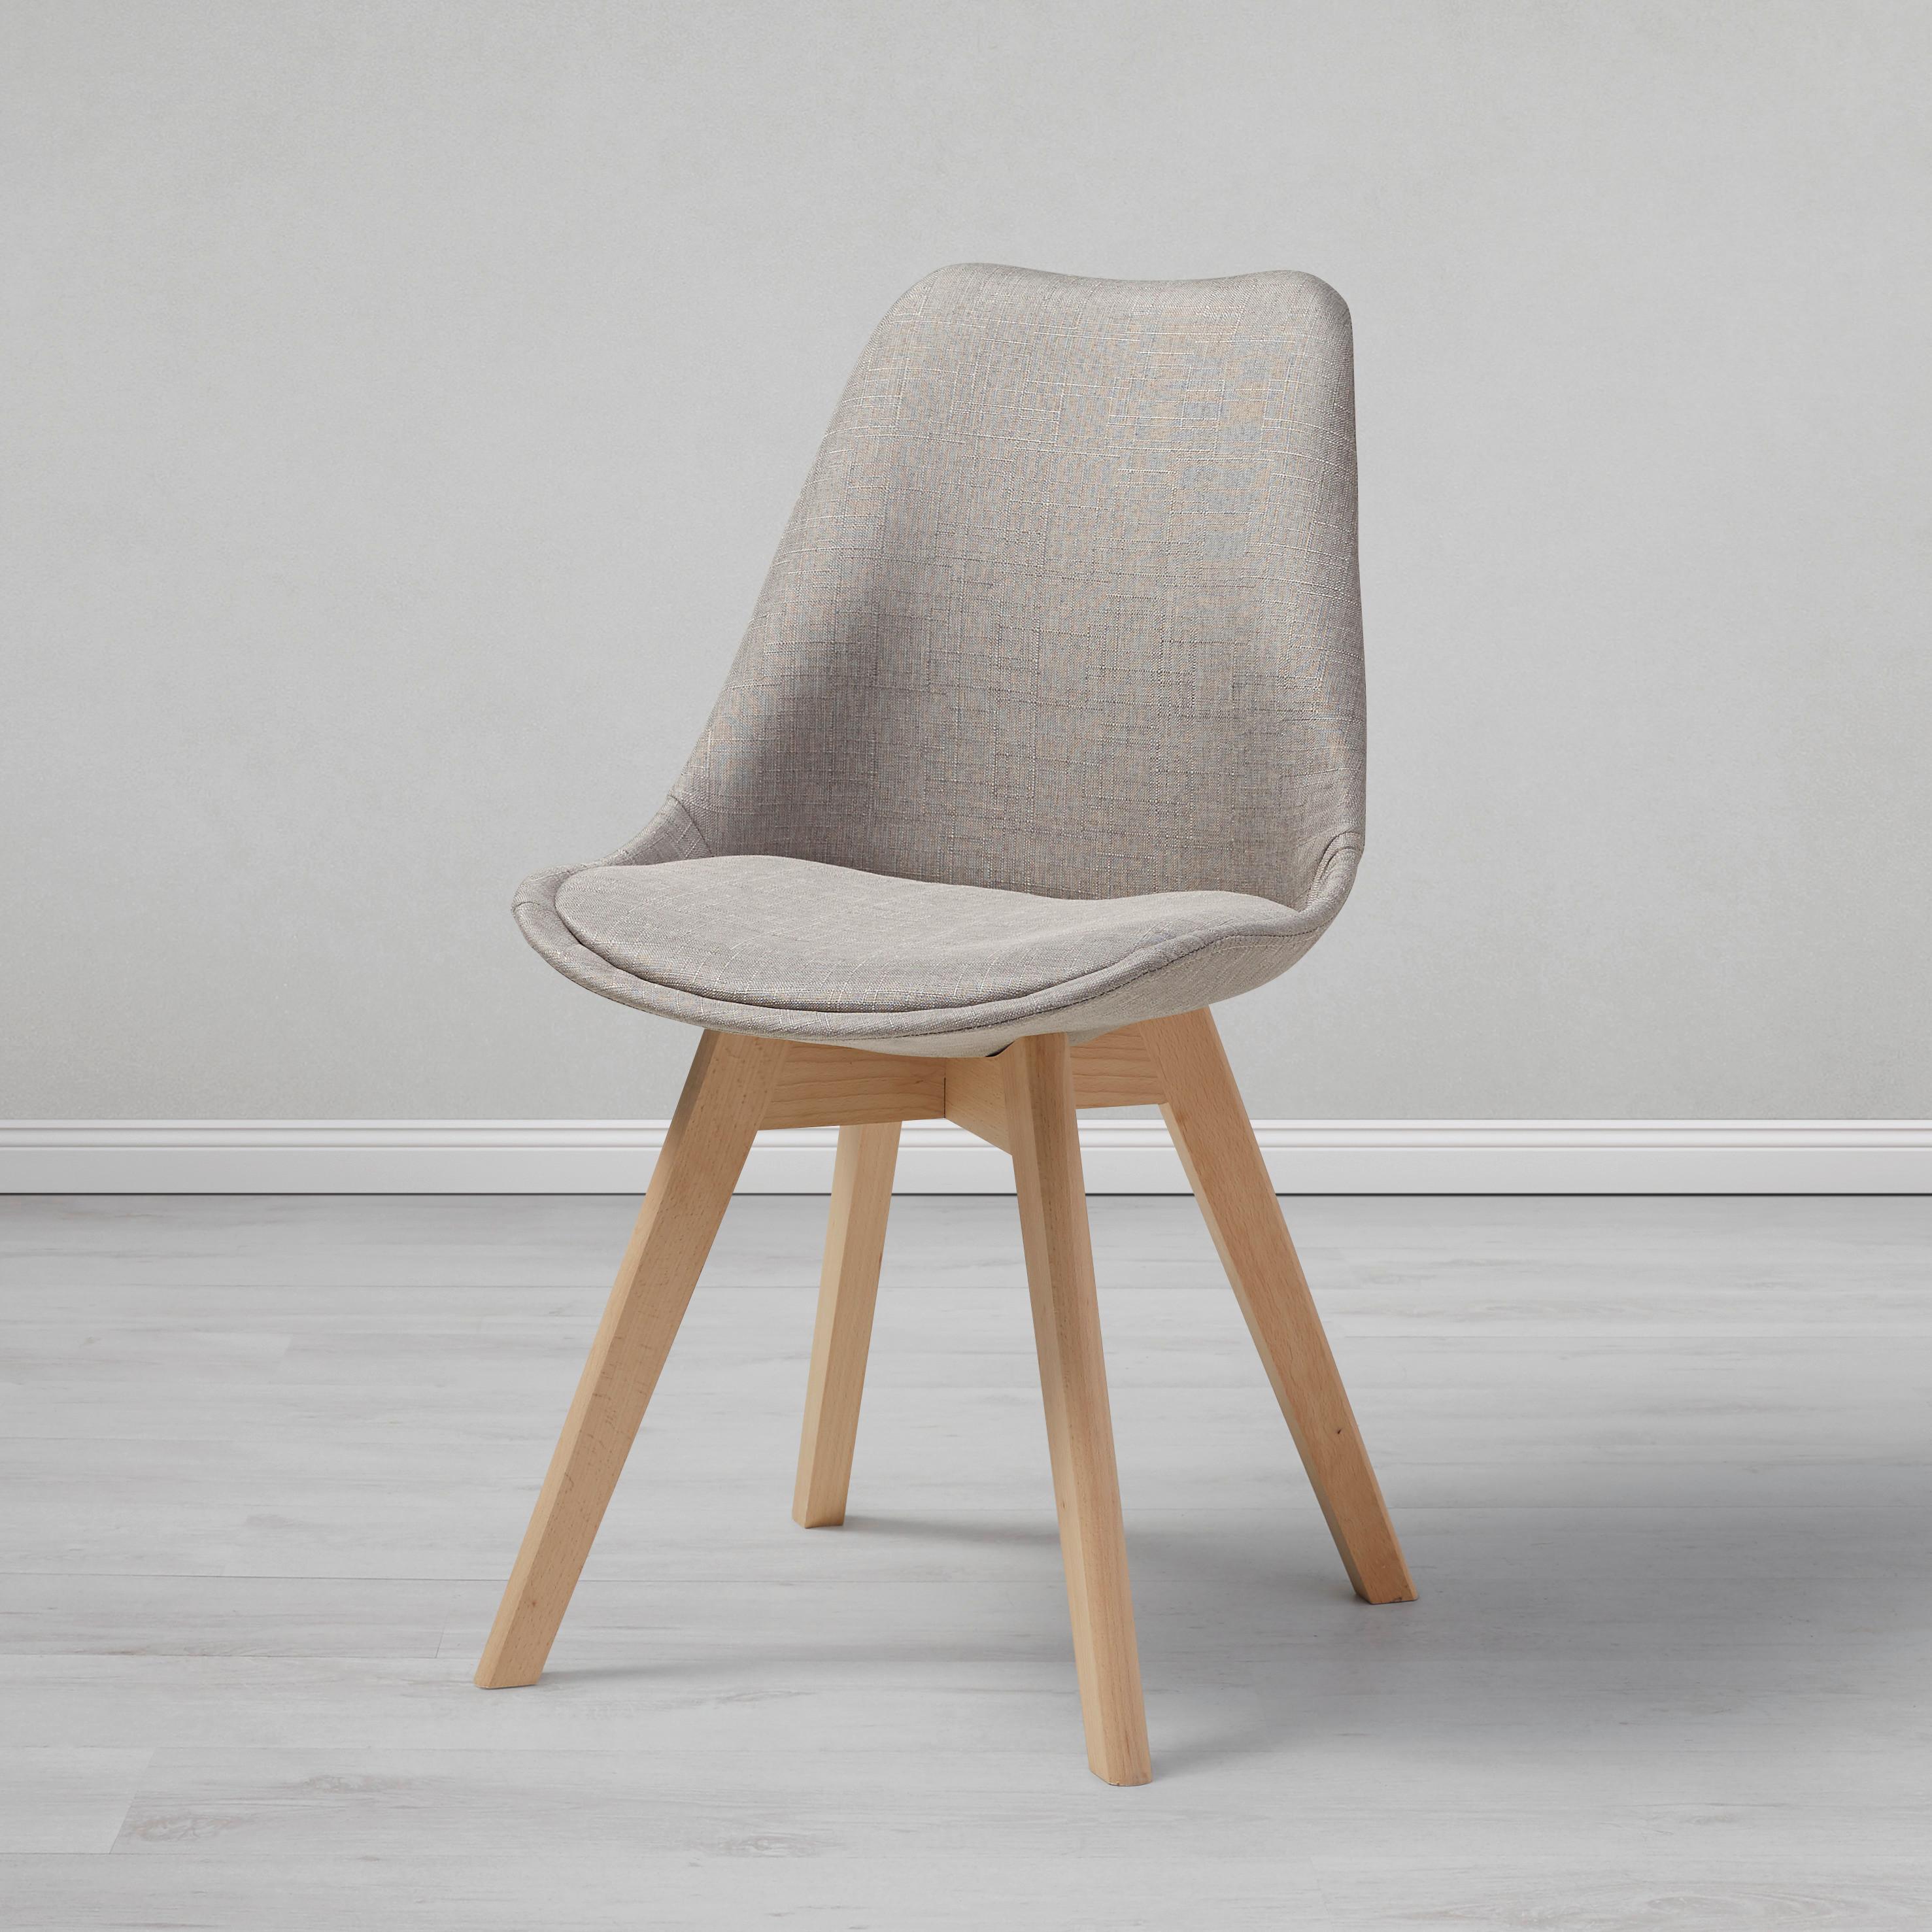 Jídelní Židle Rocksi - světle šedá/barvy buku, Moderní, dřevo/textil (48/82,5/43cm) - Bessagi Home